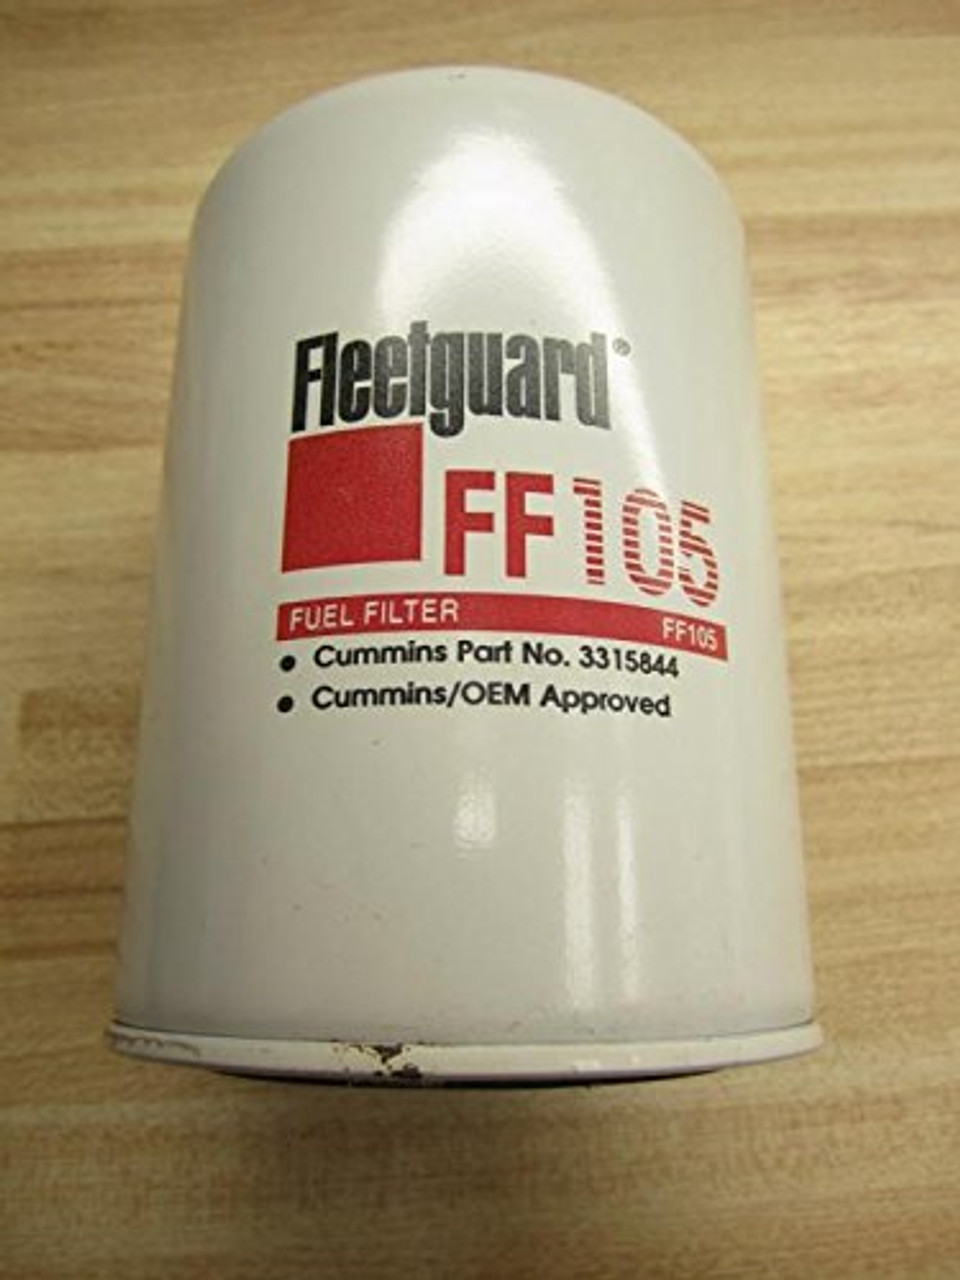 Fleetguard FF105 Fuel Filter Spin-on